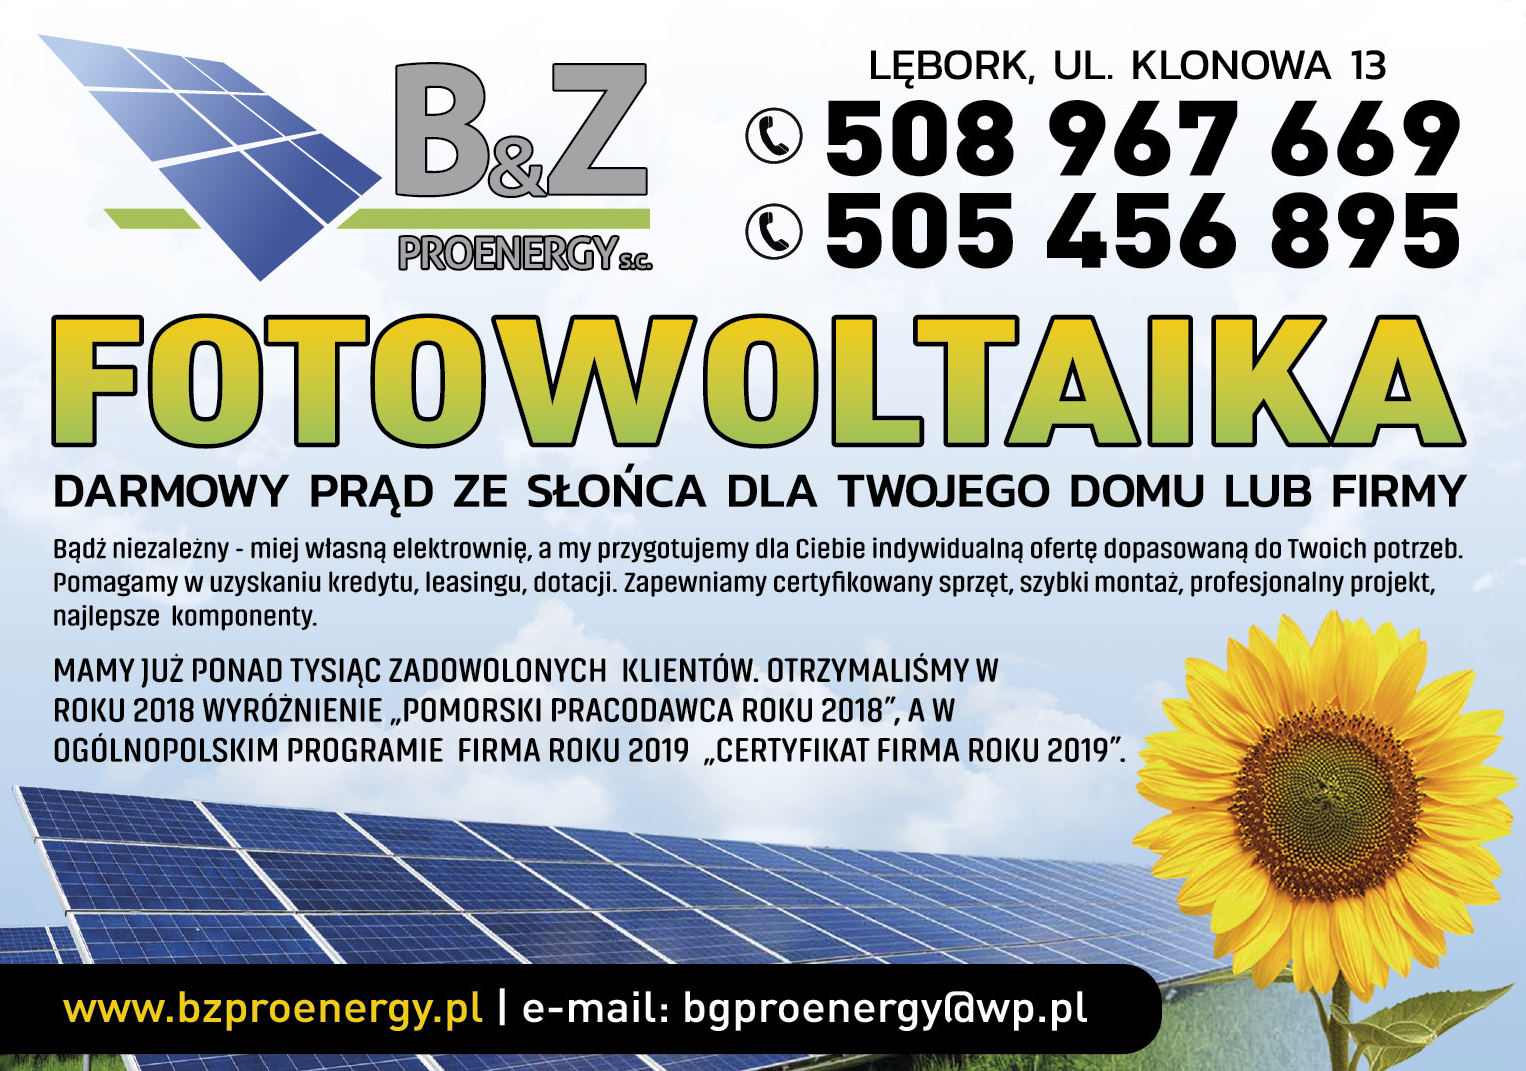 B&Z Proenergy - systemy fotowoltaiczne Lębork